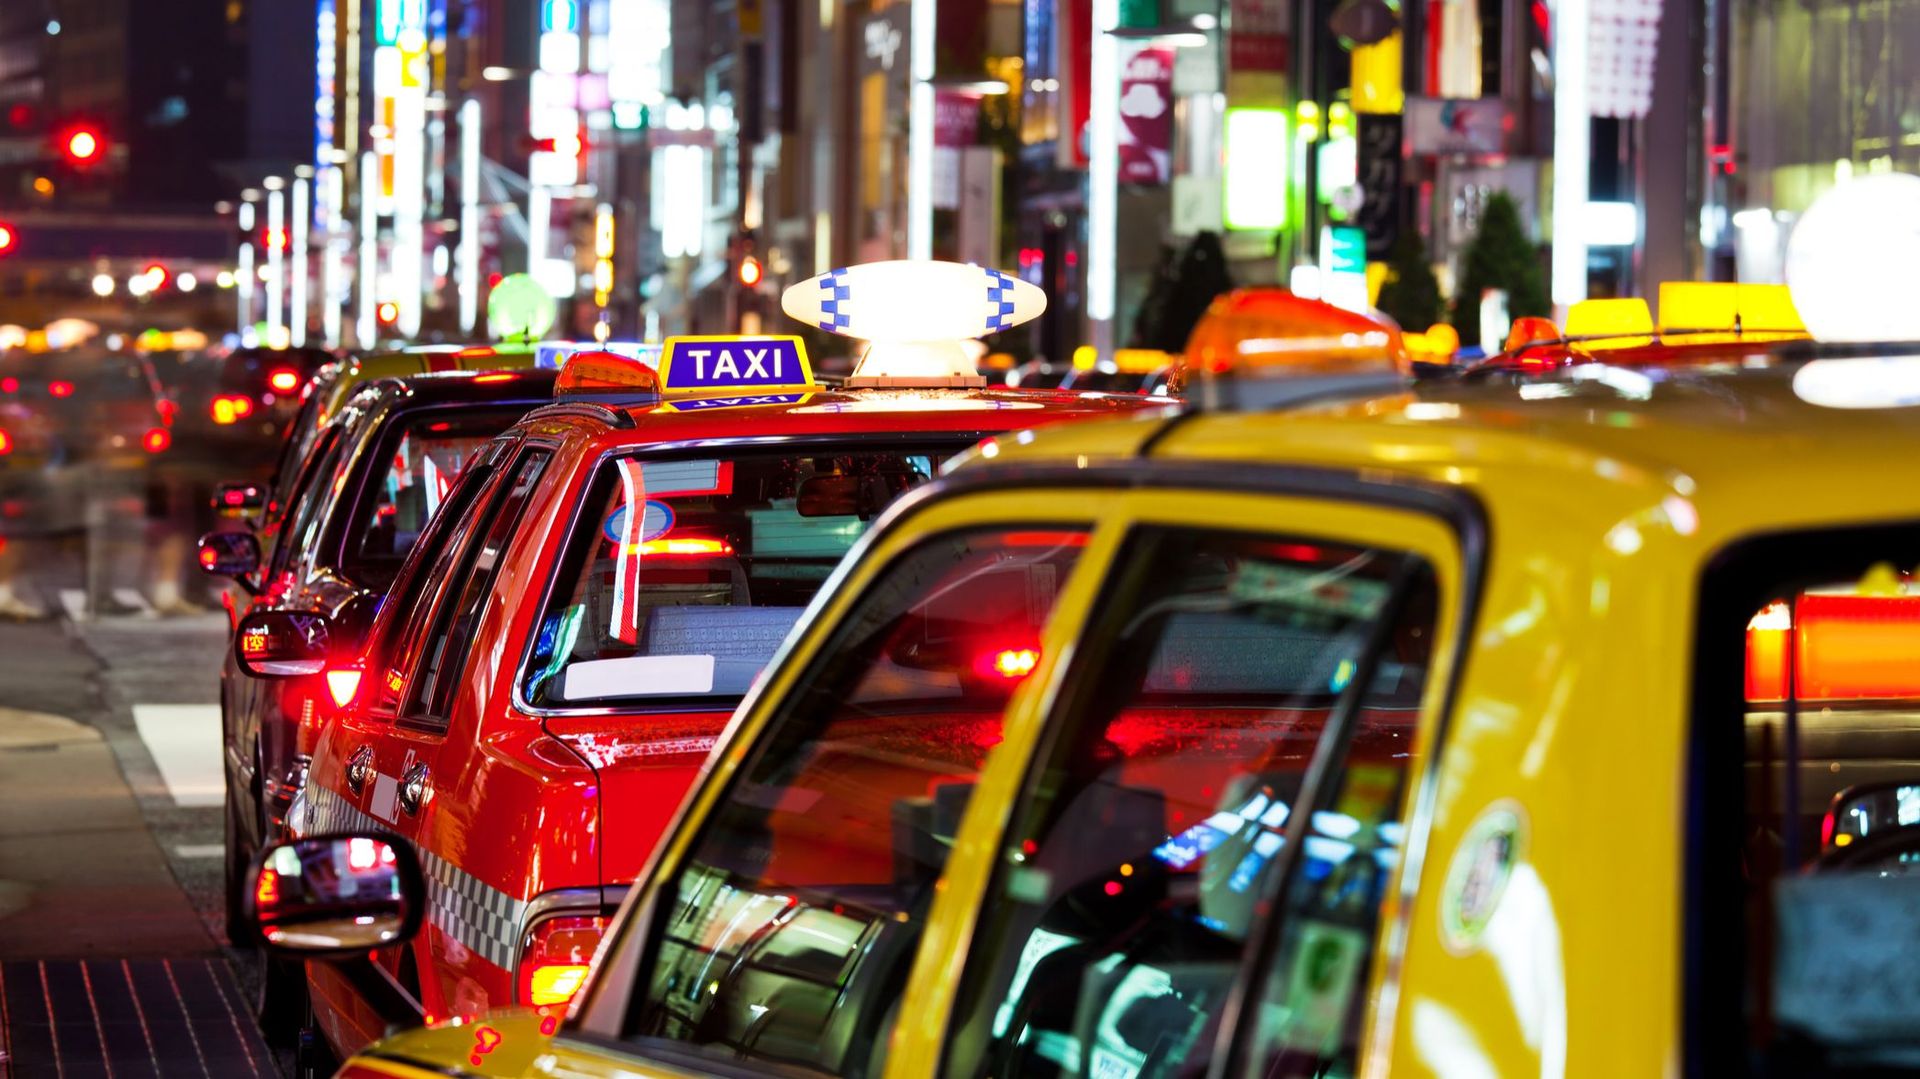 Sans licence de taxi, opérer un service commercial analogue est strictement interdit au Japon.